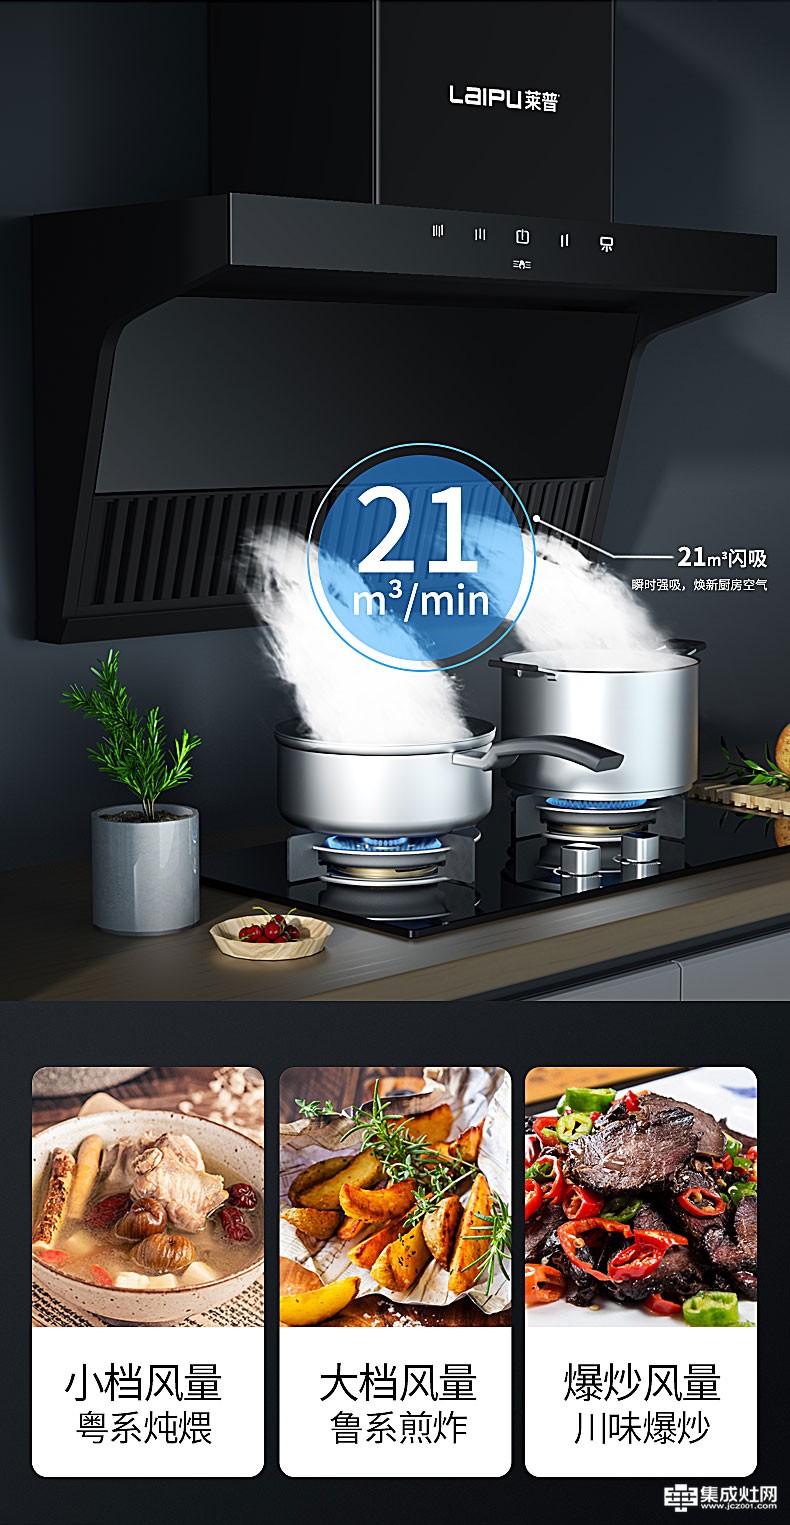 莱普CX317F油烟机 让厨房生活更简单